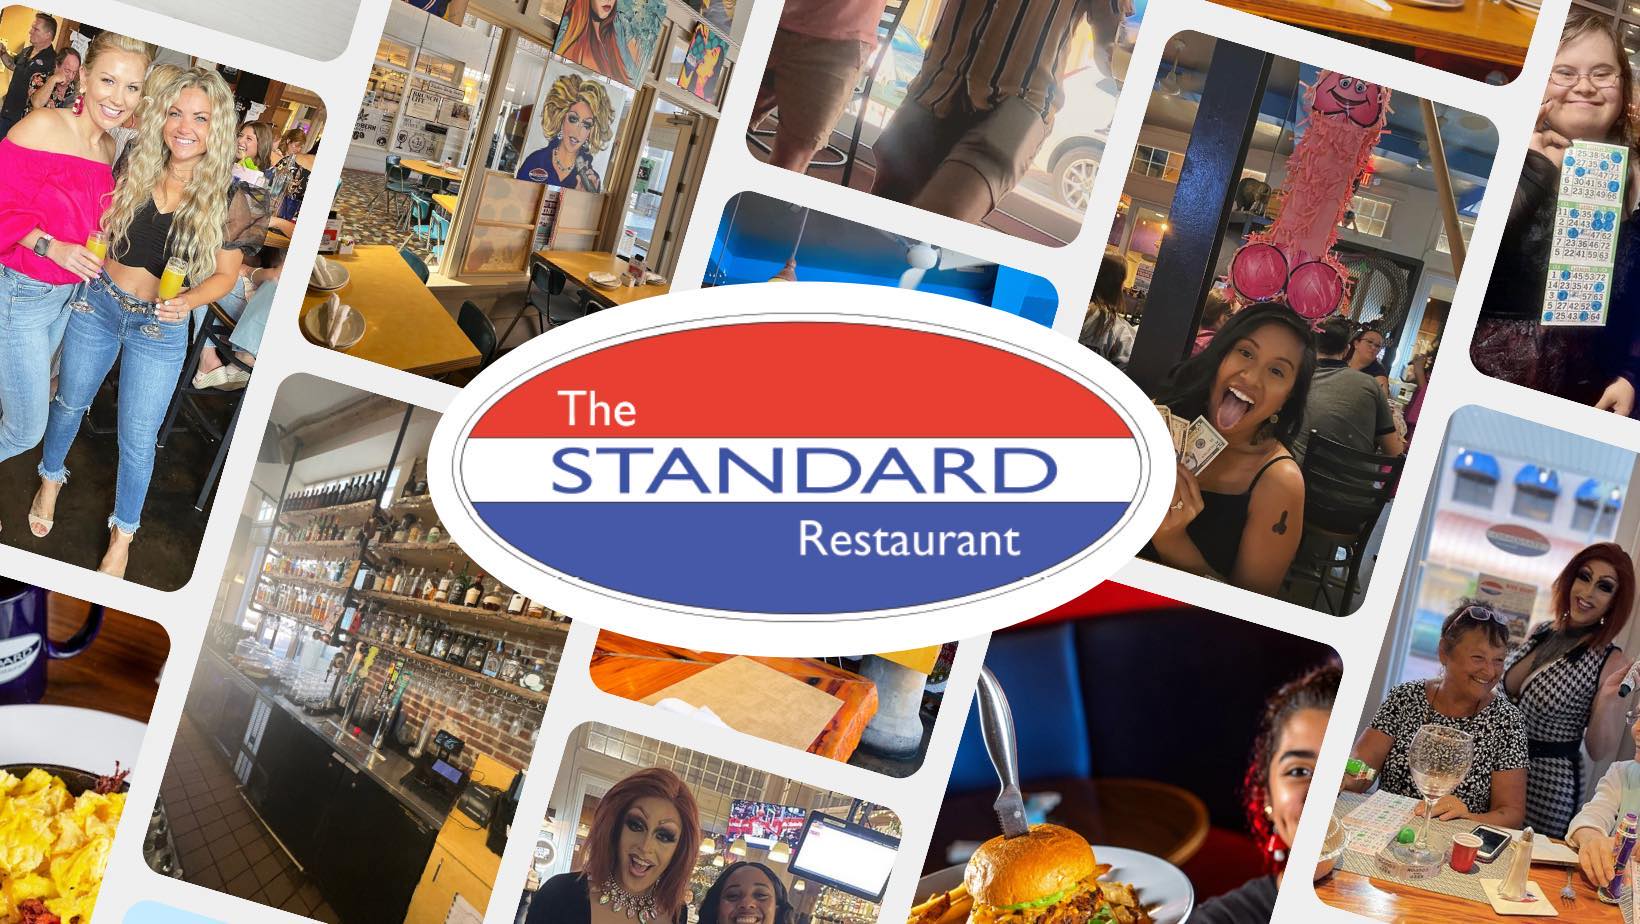 The Standard Restaurant - Christopher Blauvelt